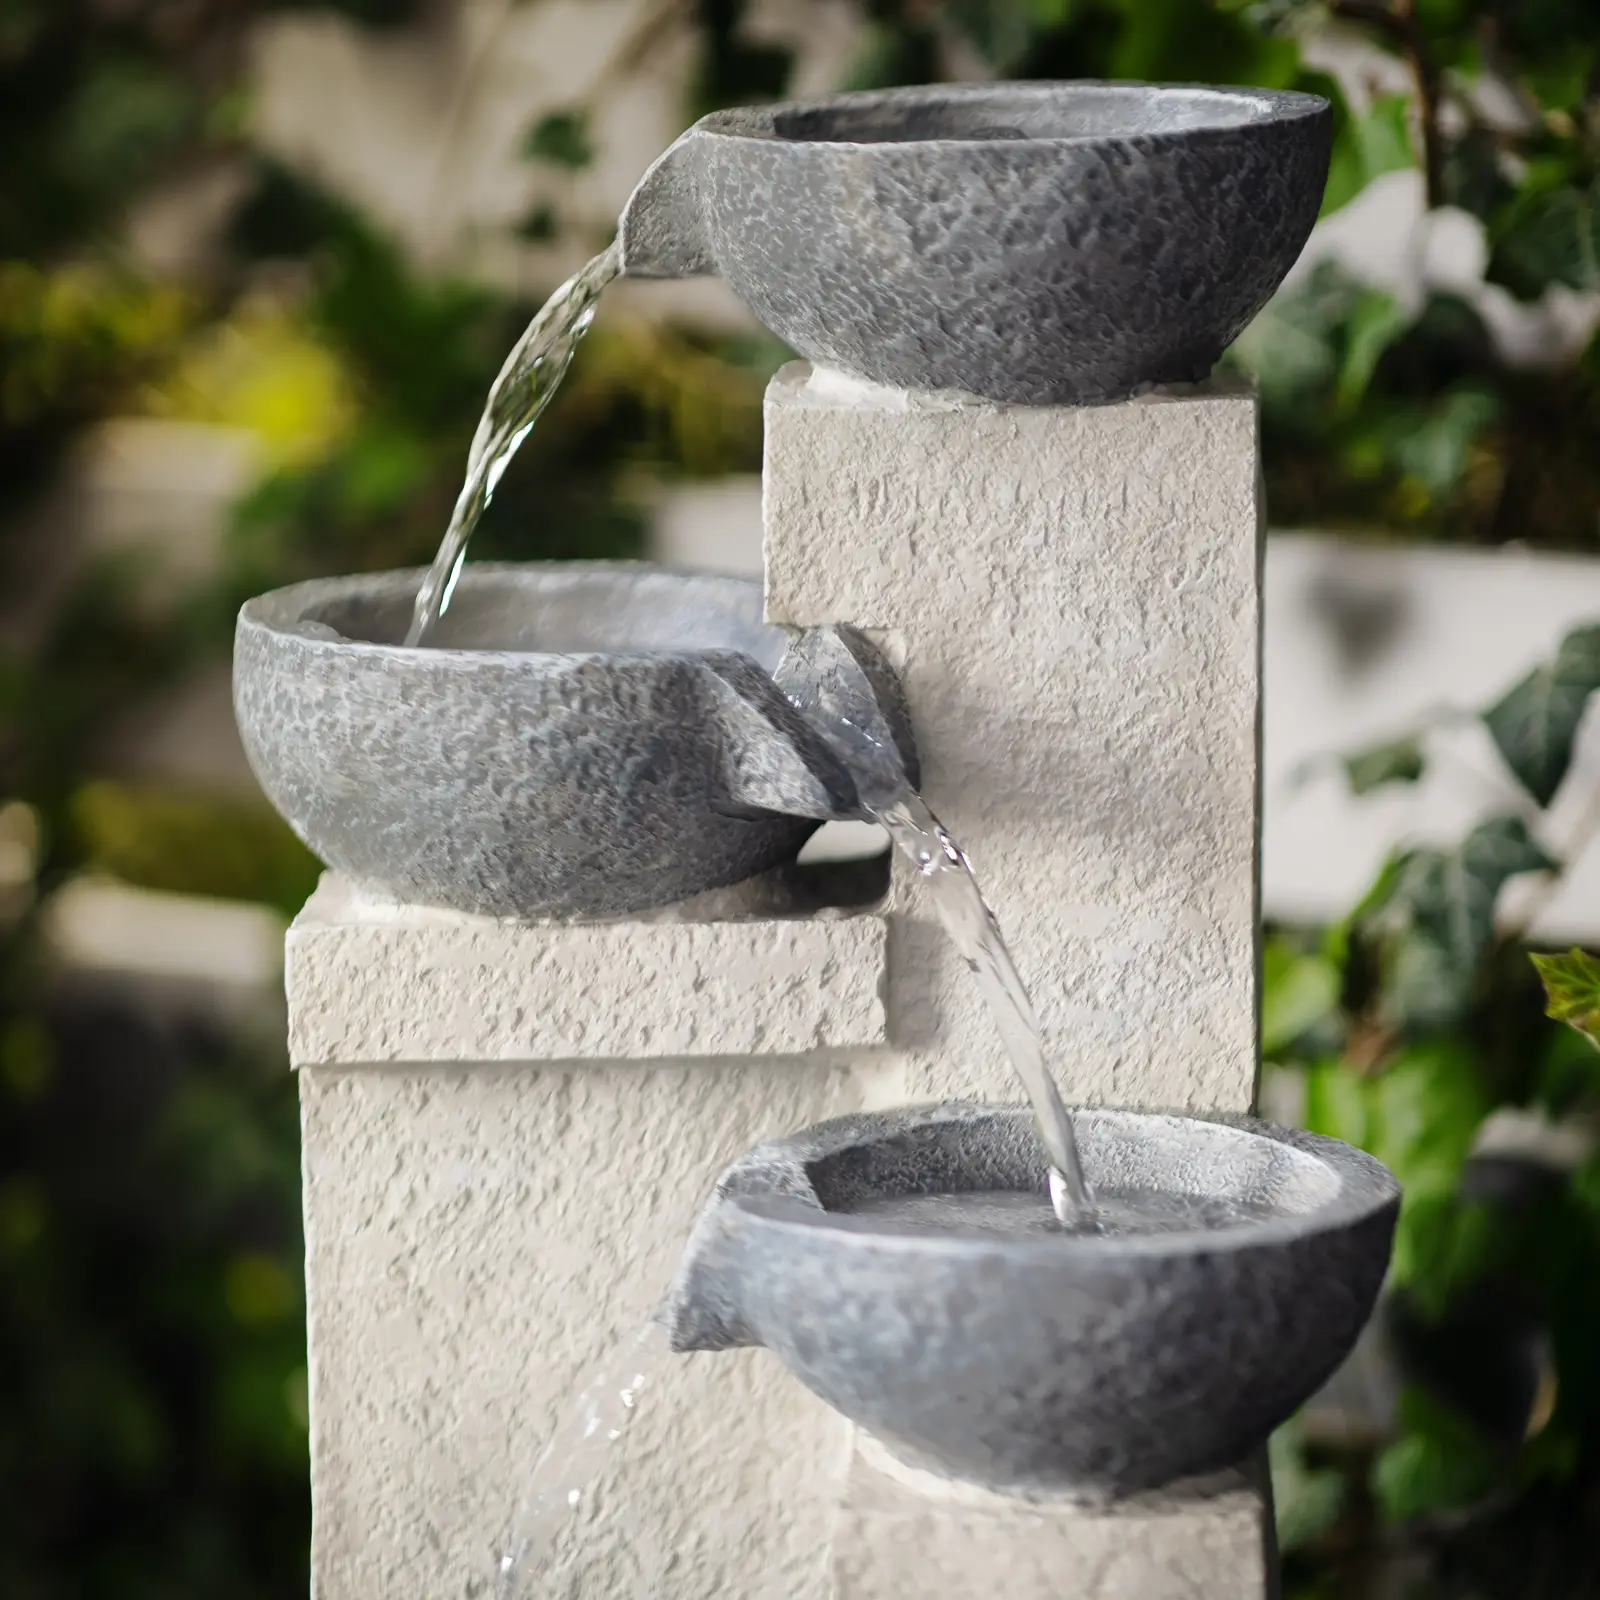 Solárna záhradná fontána - 4 misky na cementových stupienkoch - LED osvetlenie